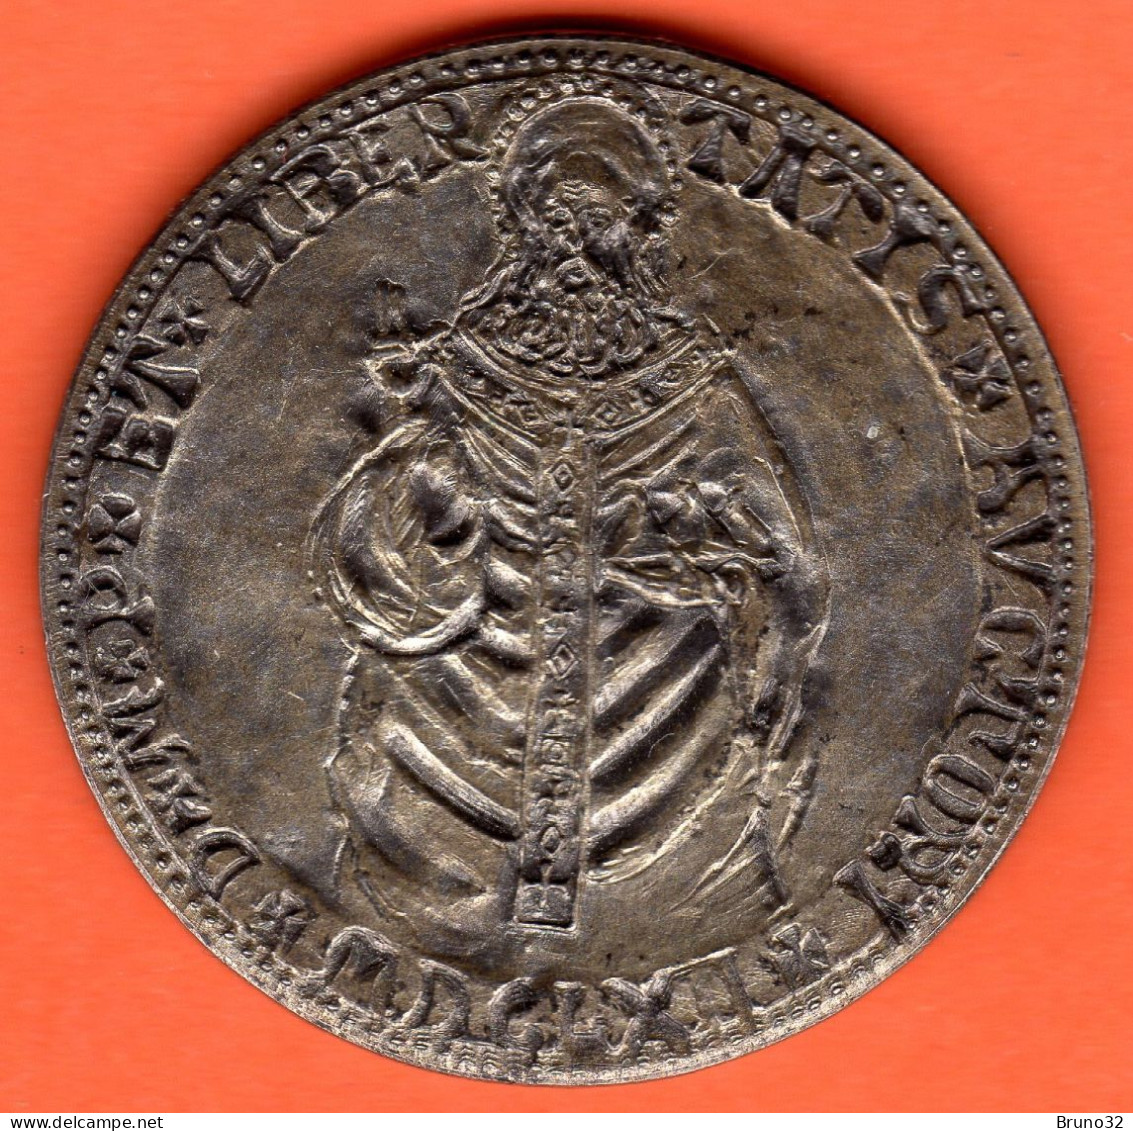 SAN MARINO - Medaglia In Argento 14,5g - 1971 - Antichi Sigilli - Come Da Foto - Monarchia / Nobiltà